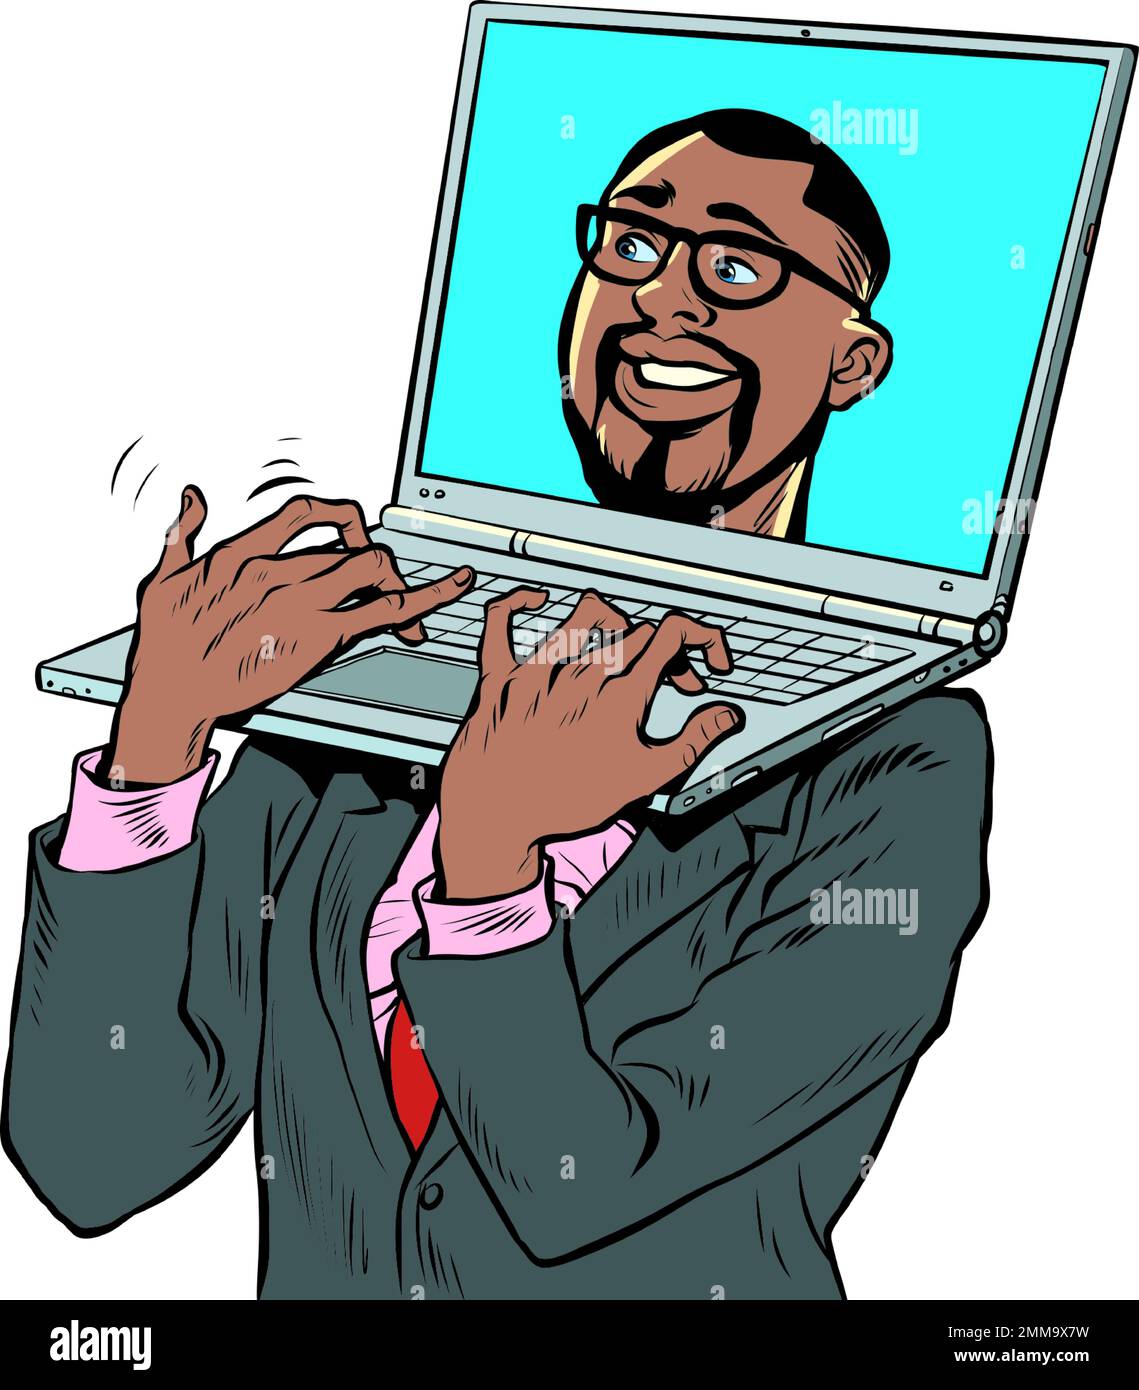 Pop art africain homme d'affaires américain avec ordinateur portable au lieu d'une tête. Appareil électronique transportant un ordinateur. Travail de bureau Illustration de Vecteur